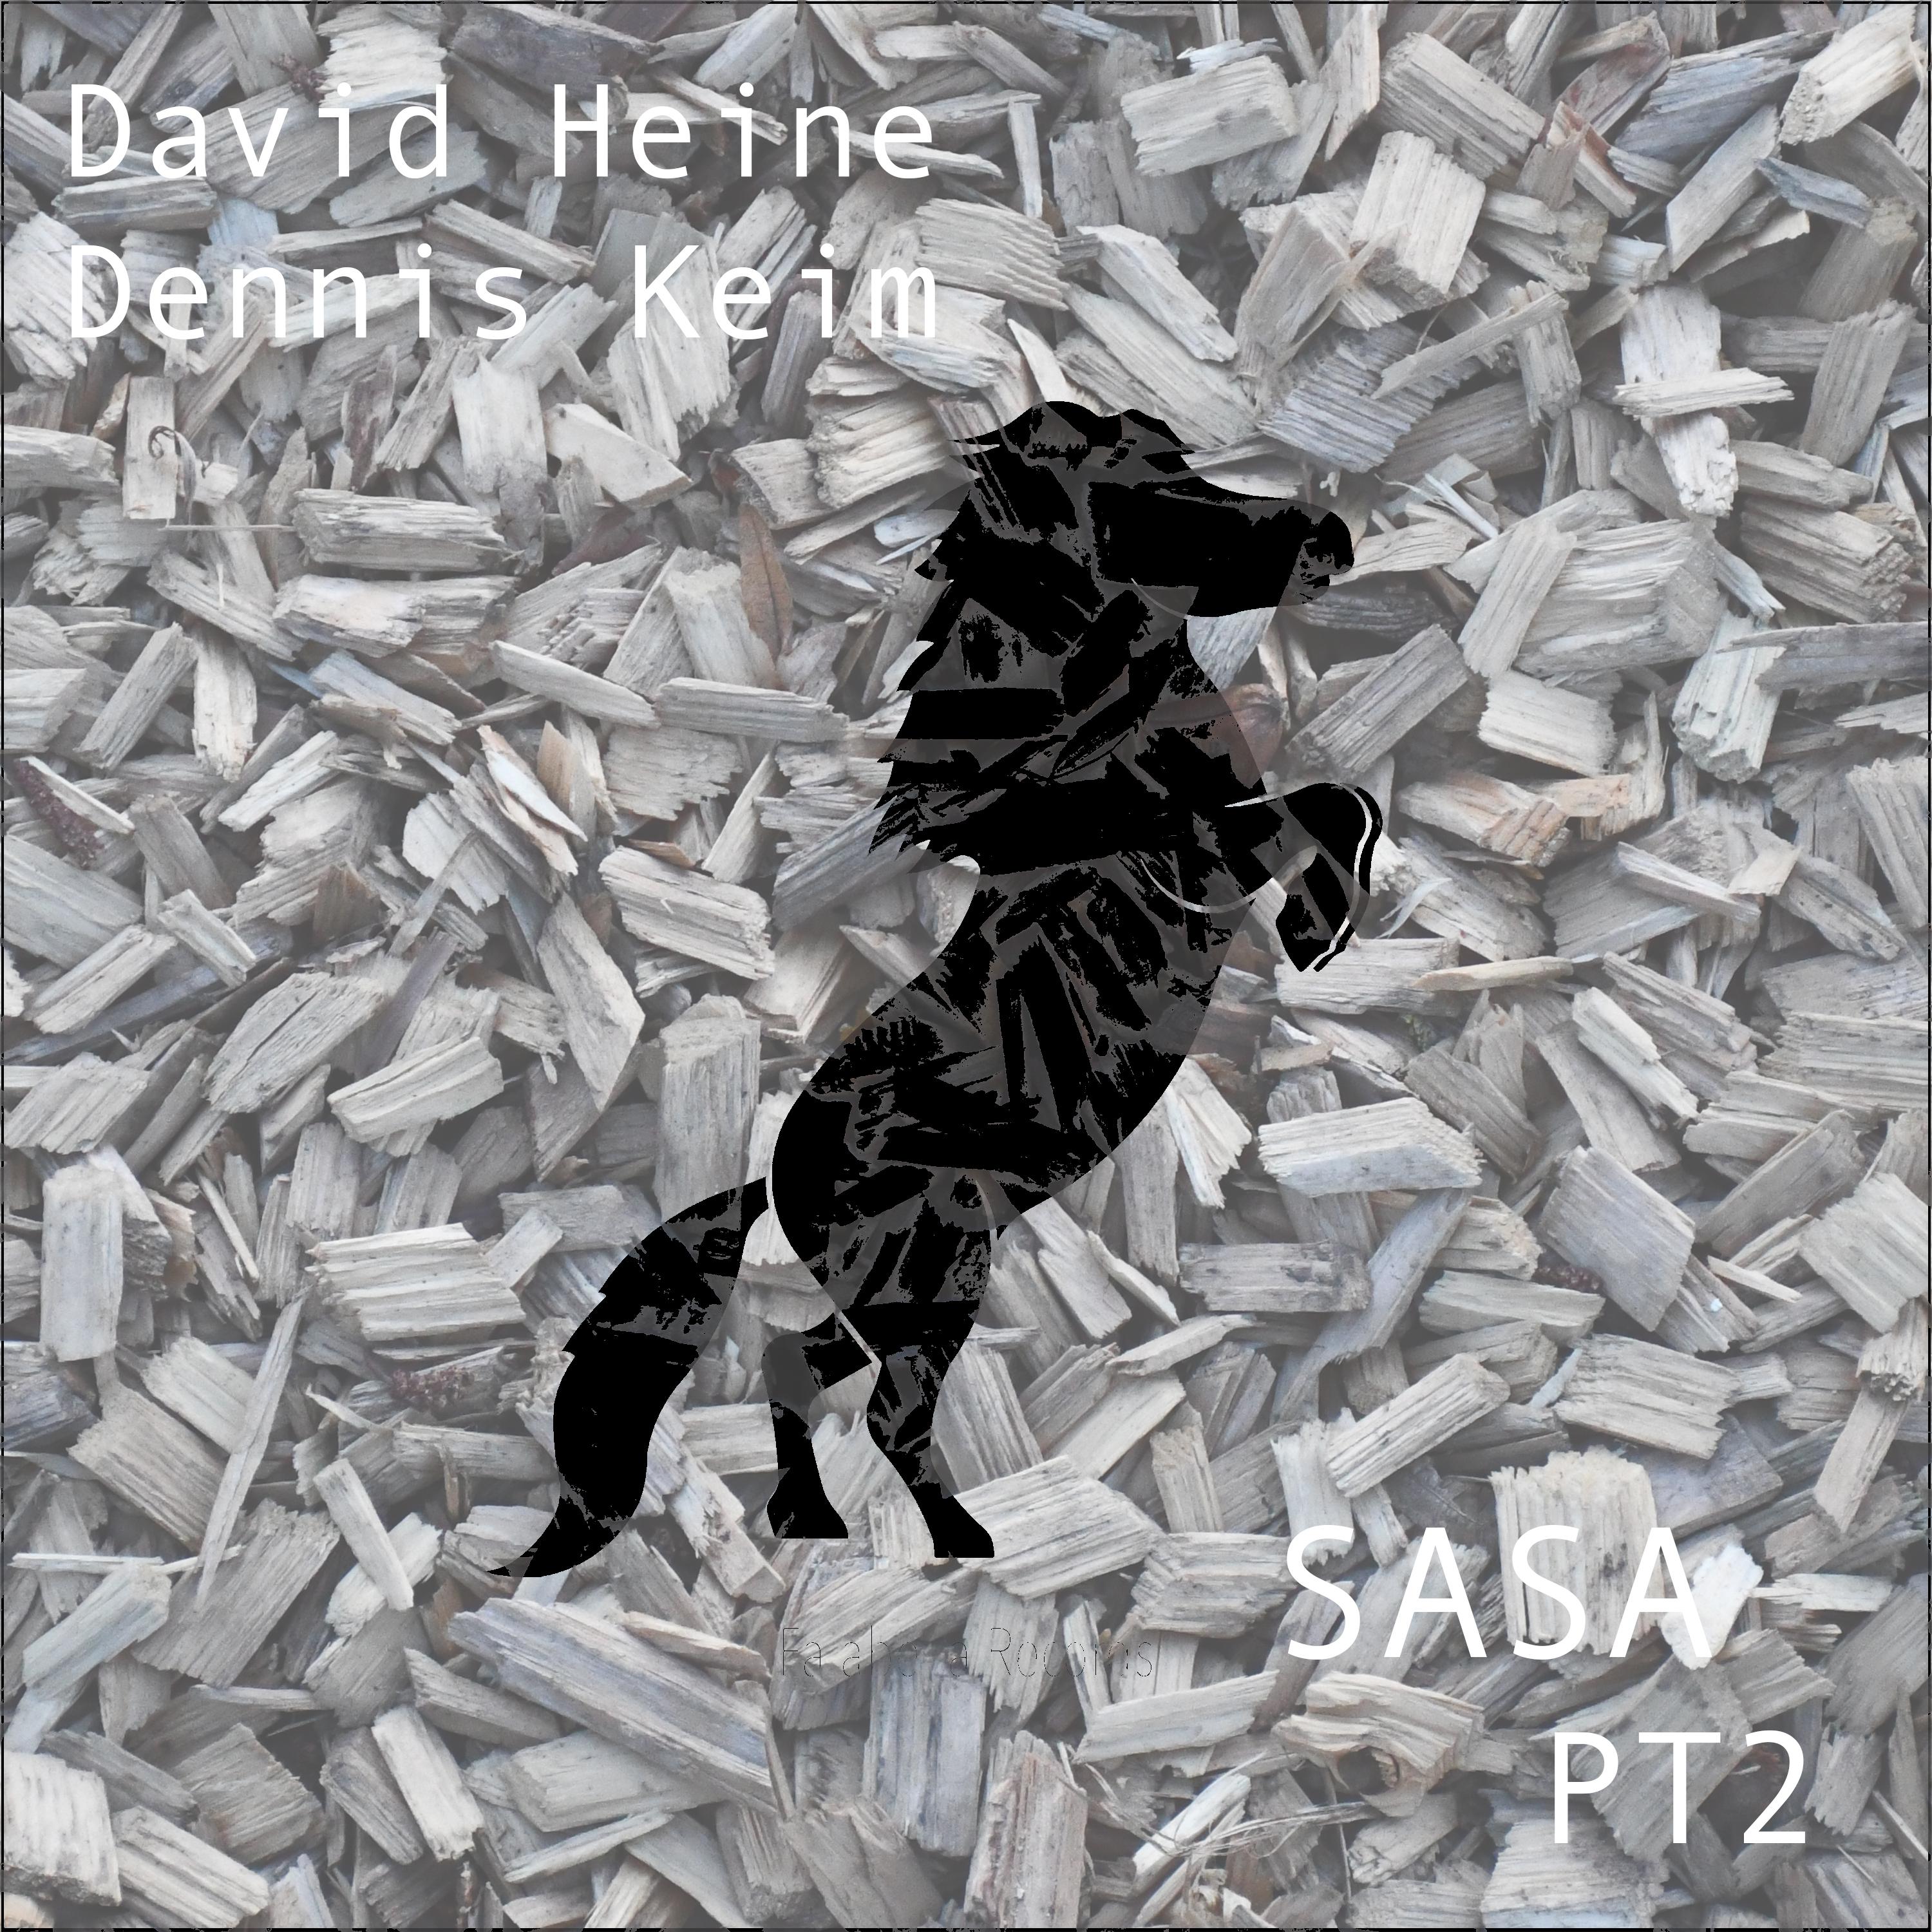 Dennis Keim - Sasa (David Heine Remix)